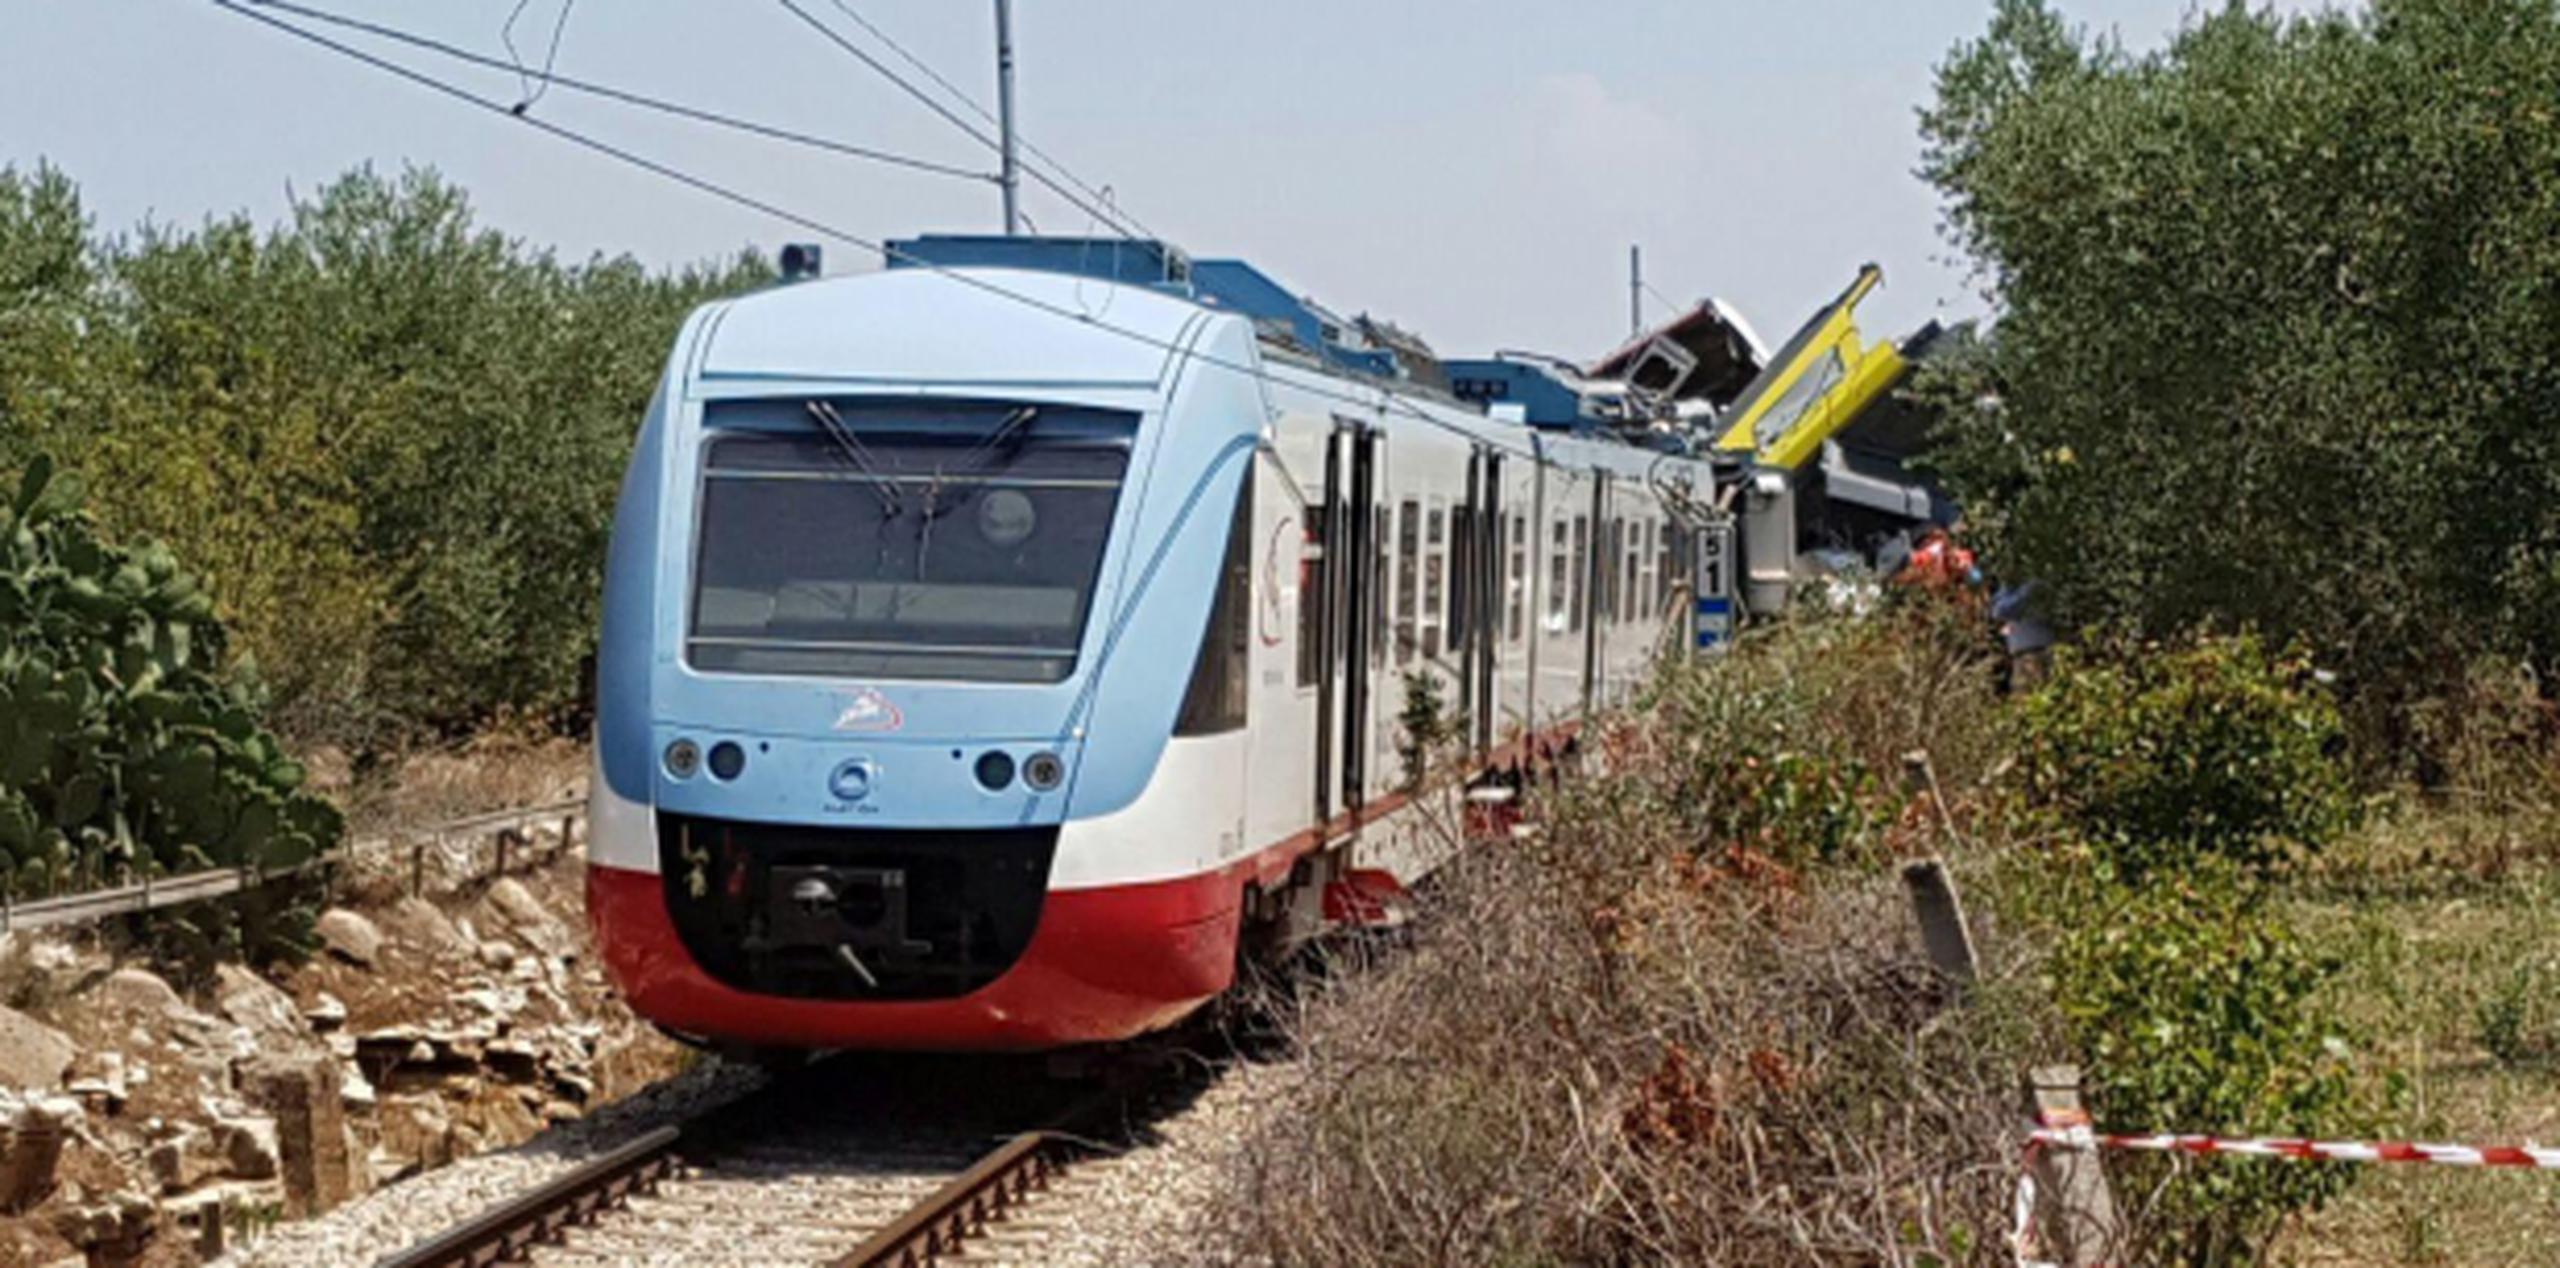 El accidente ocurrido hoy en Italia es en una de las peores tragedias ferroviarias en Europa. (EFE)